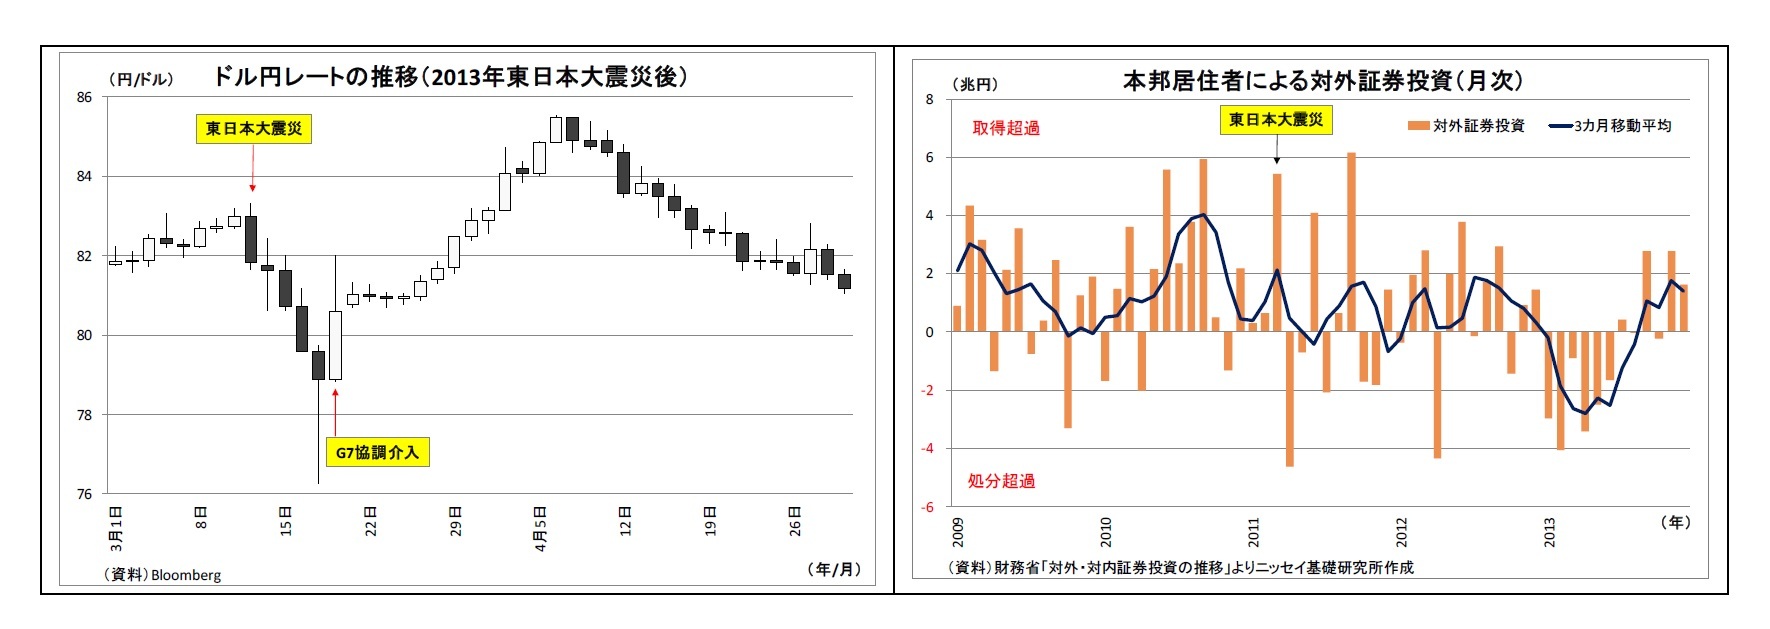 ドル円レートの推移（2013年東日本大震災後）/本邦居住者による対外証券投資（月次）